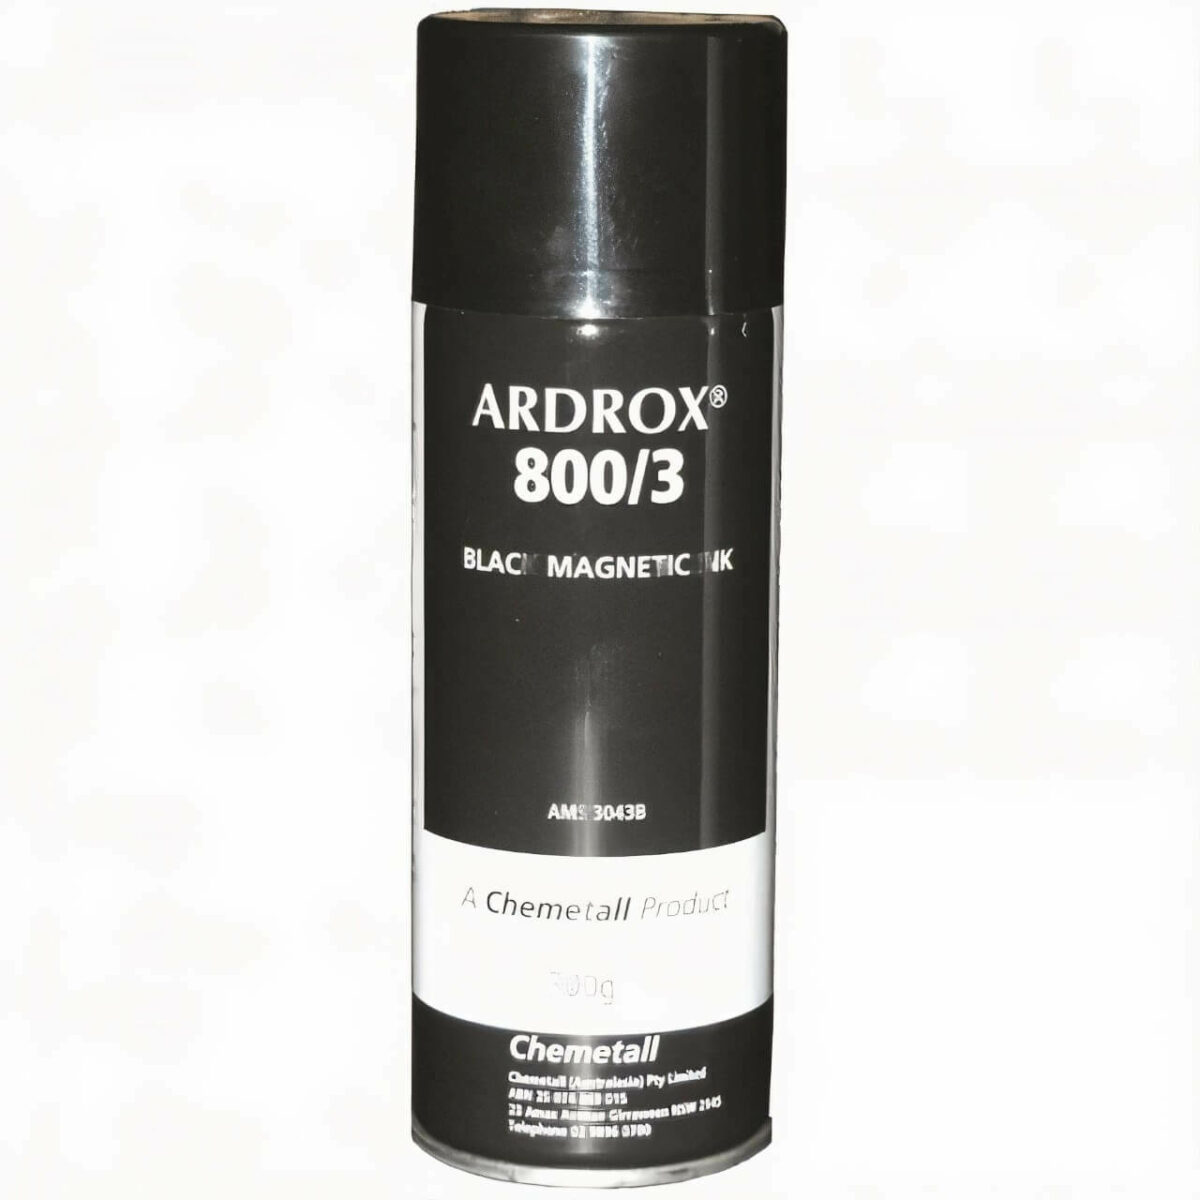 Crack Testing Ardrox Black Magnetic Ink - 800/3